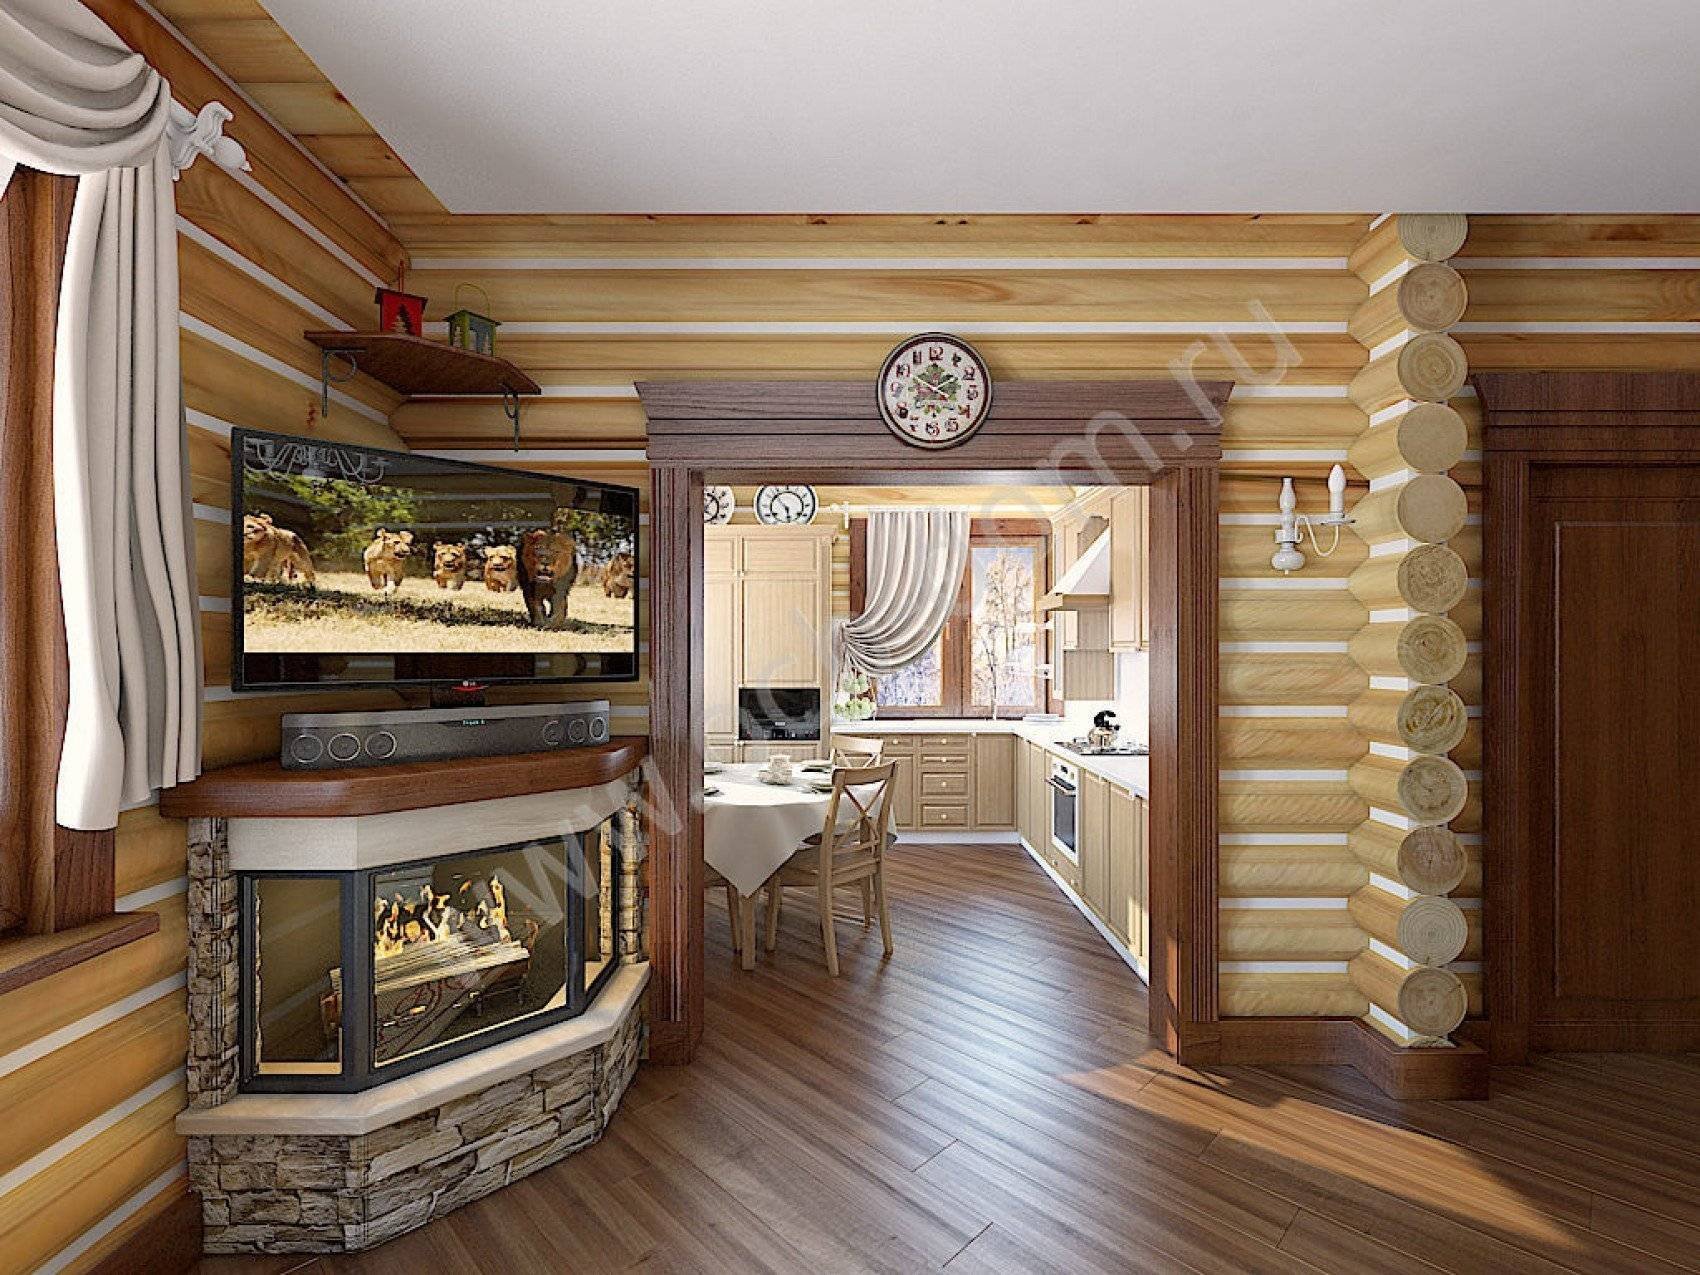 Интерьер деревянного дома из оцилиндрованного бревна